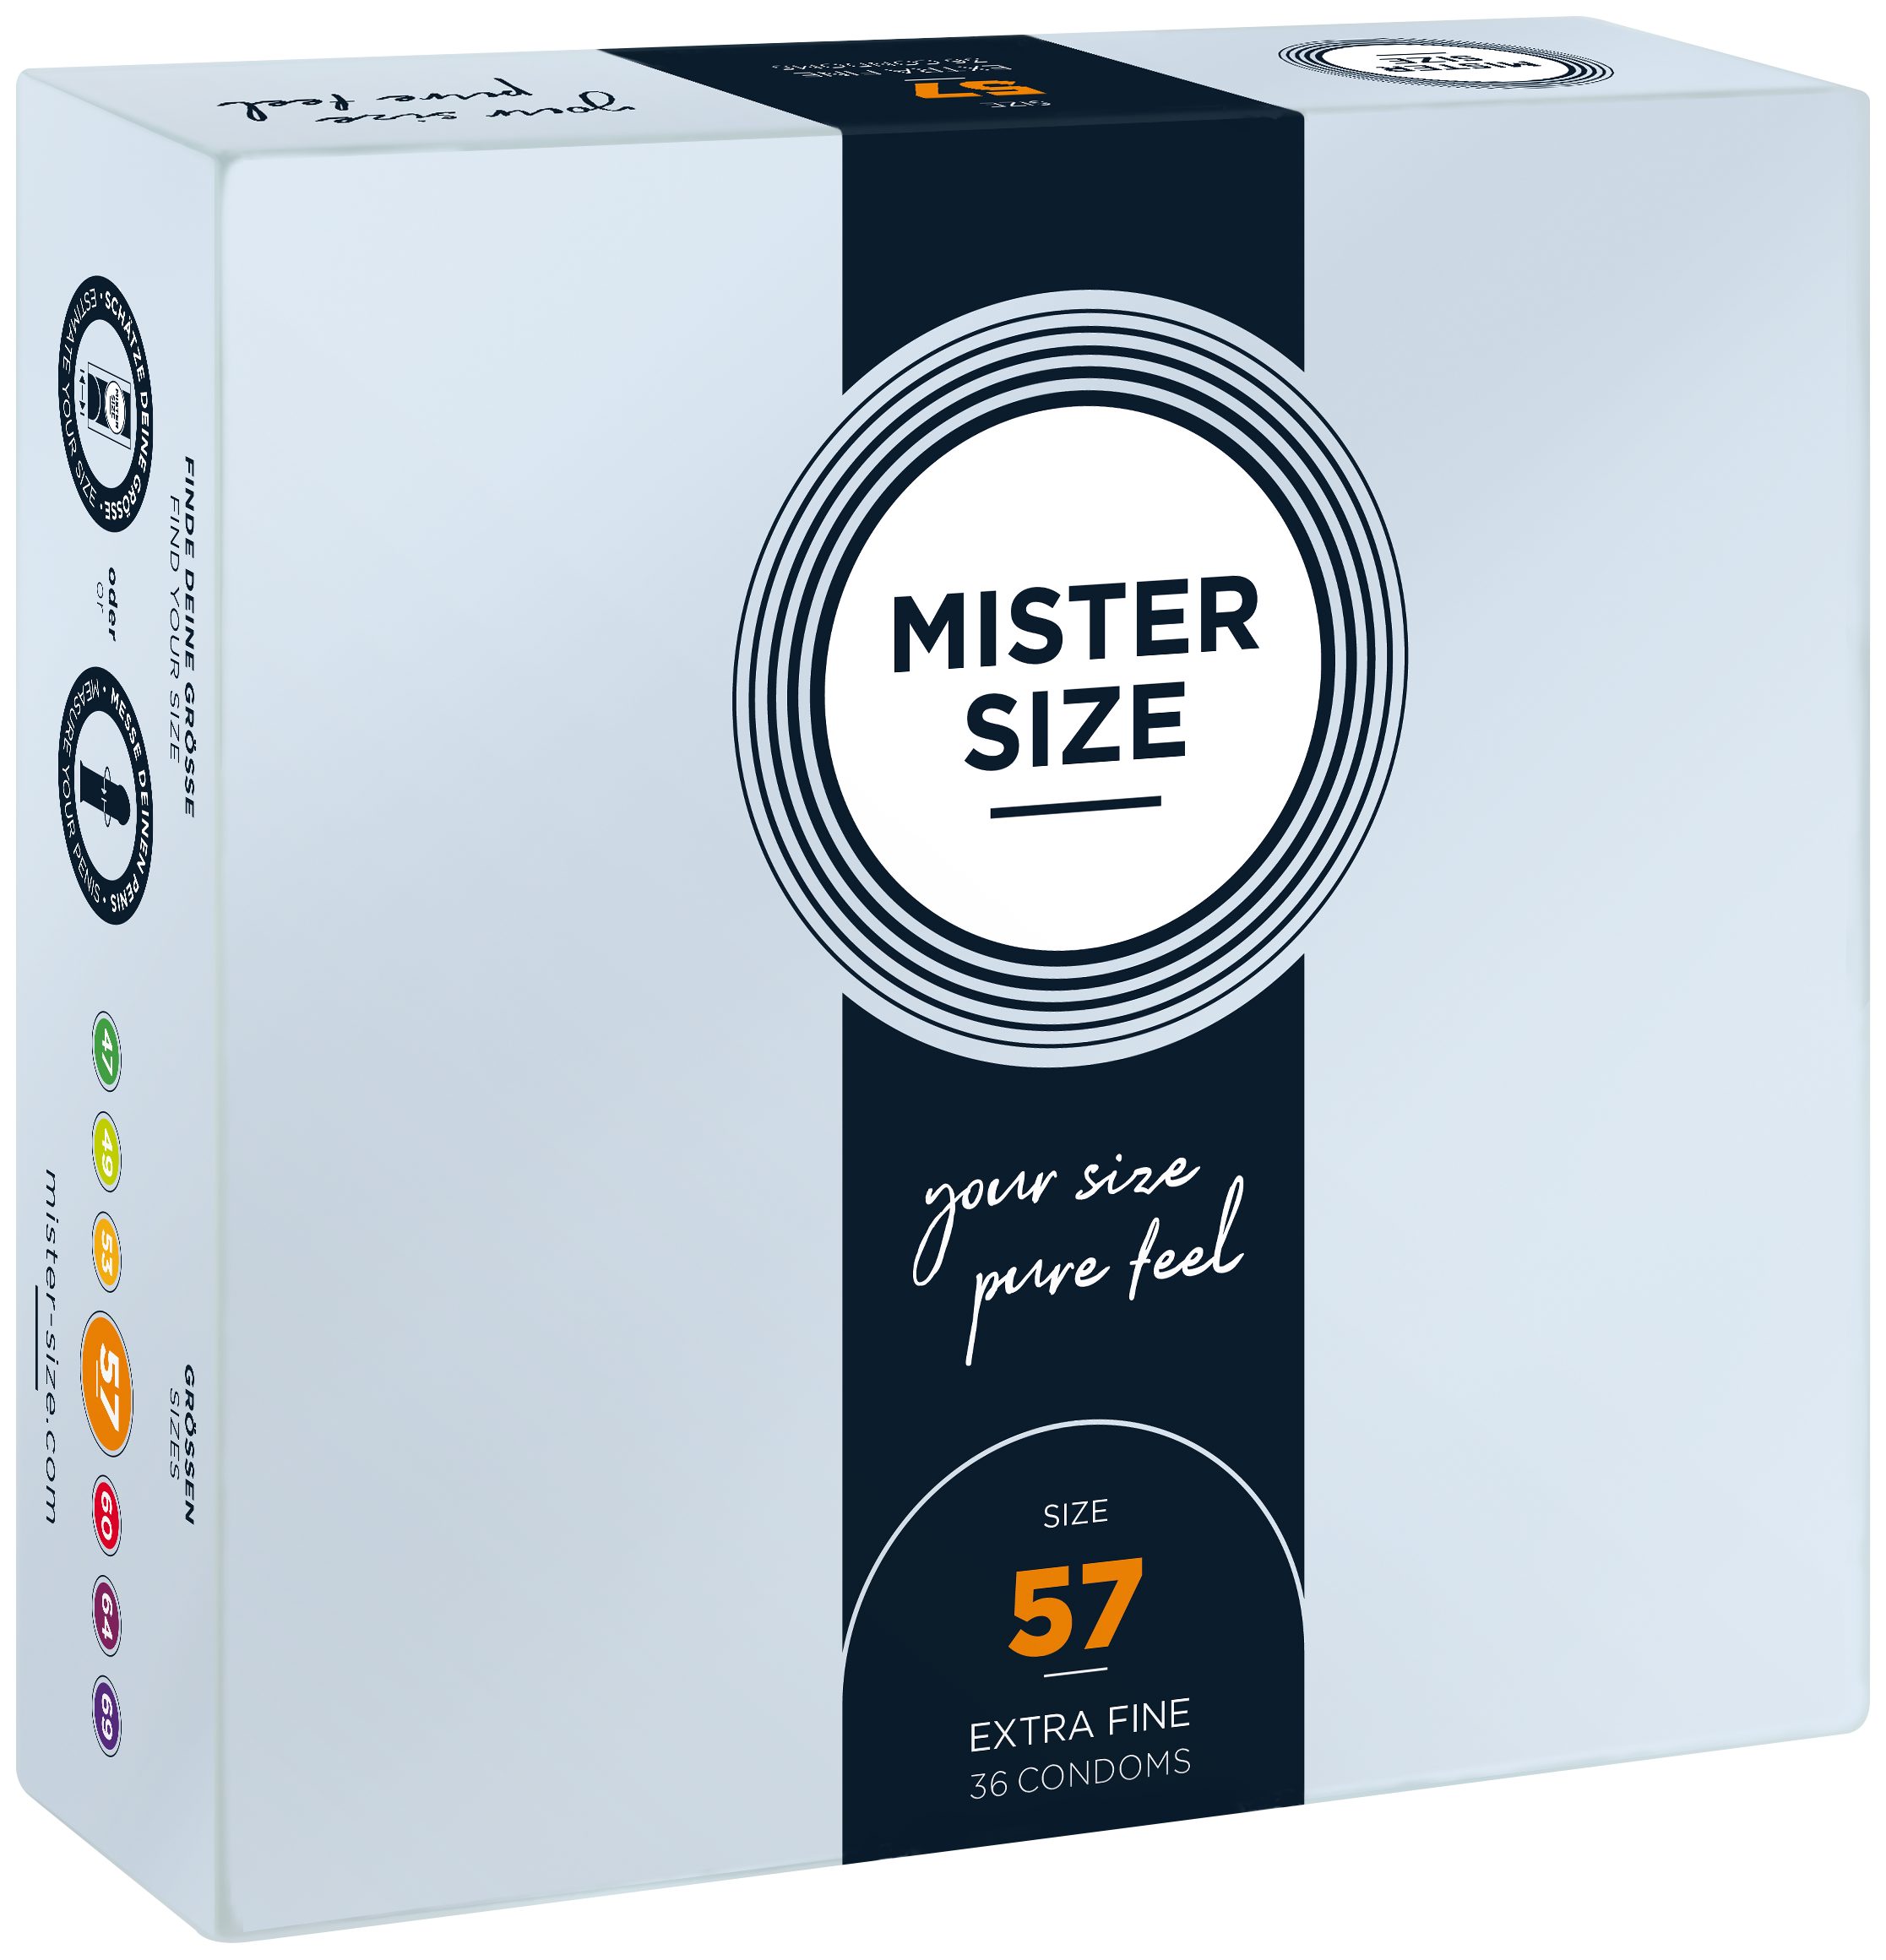 MISTER gefühlsecht Breite SIZE feucht Kondome 57mm, Nominale & Stück, 36